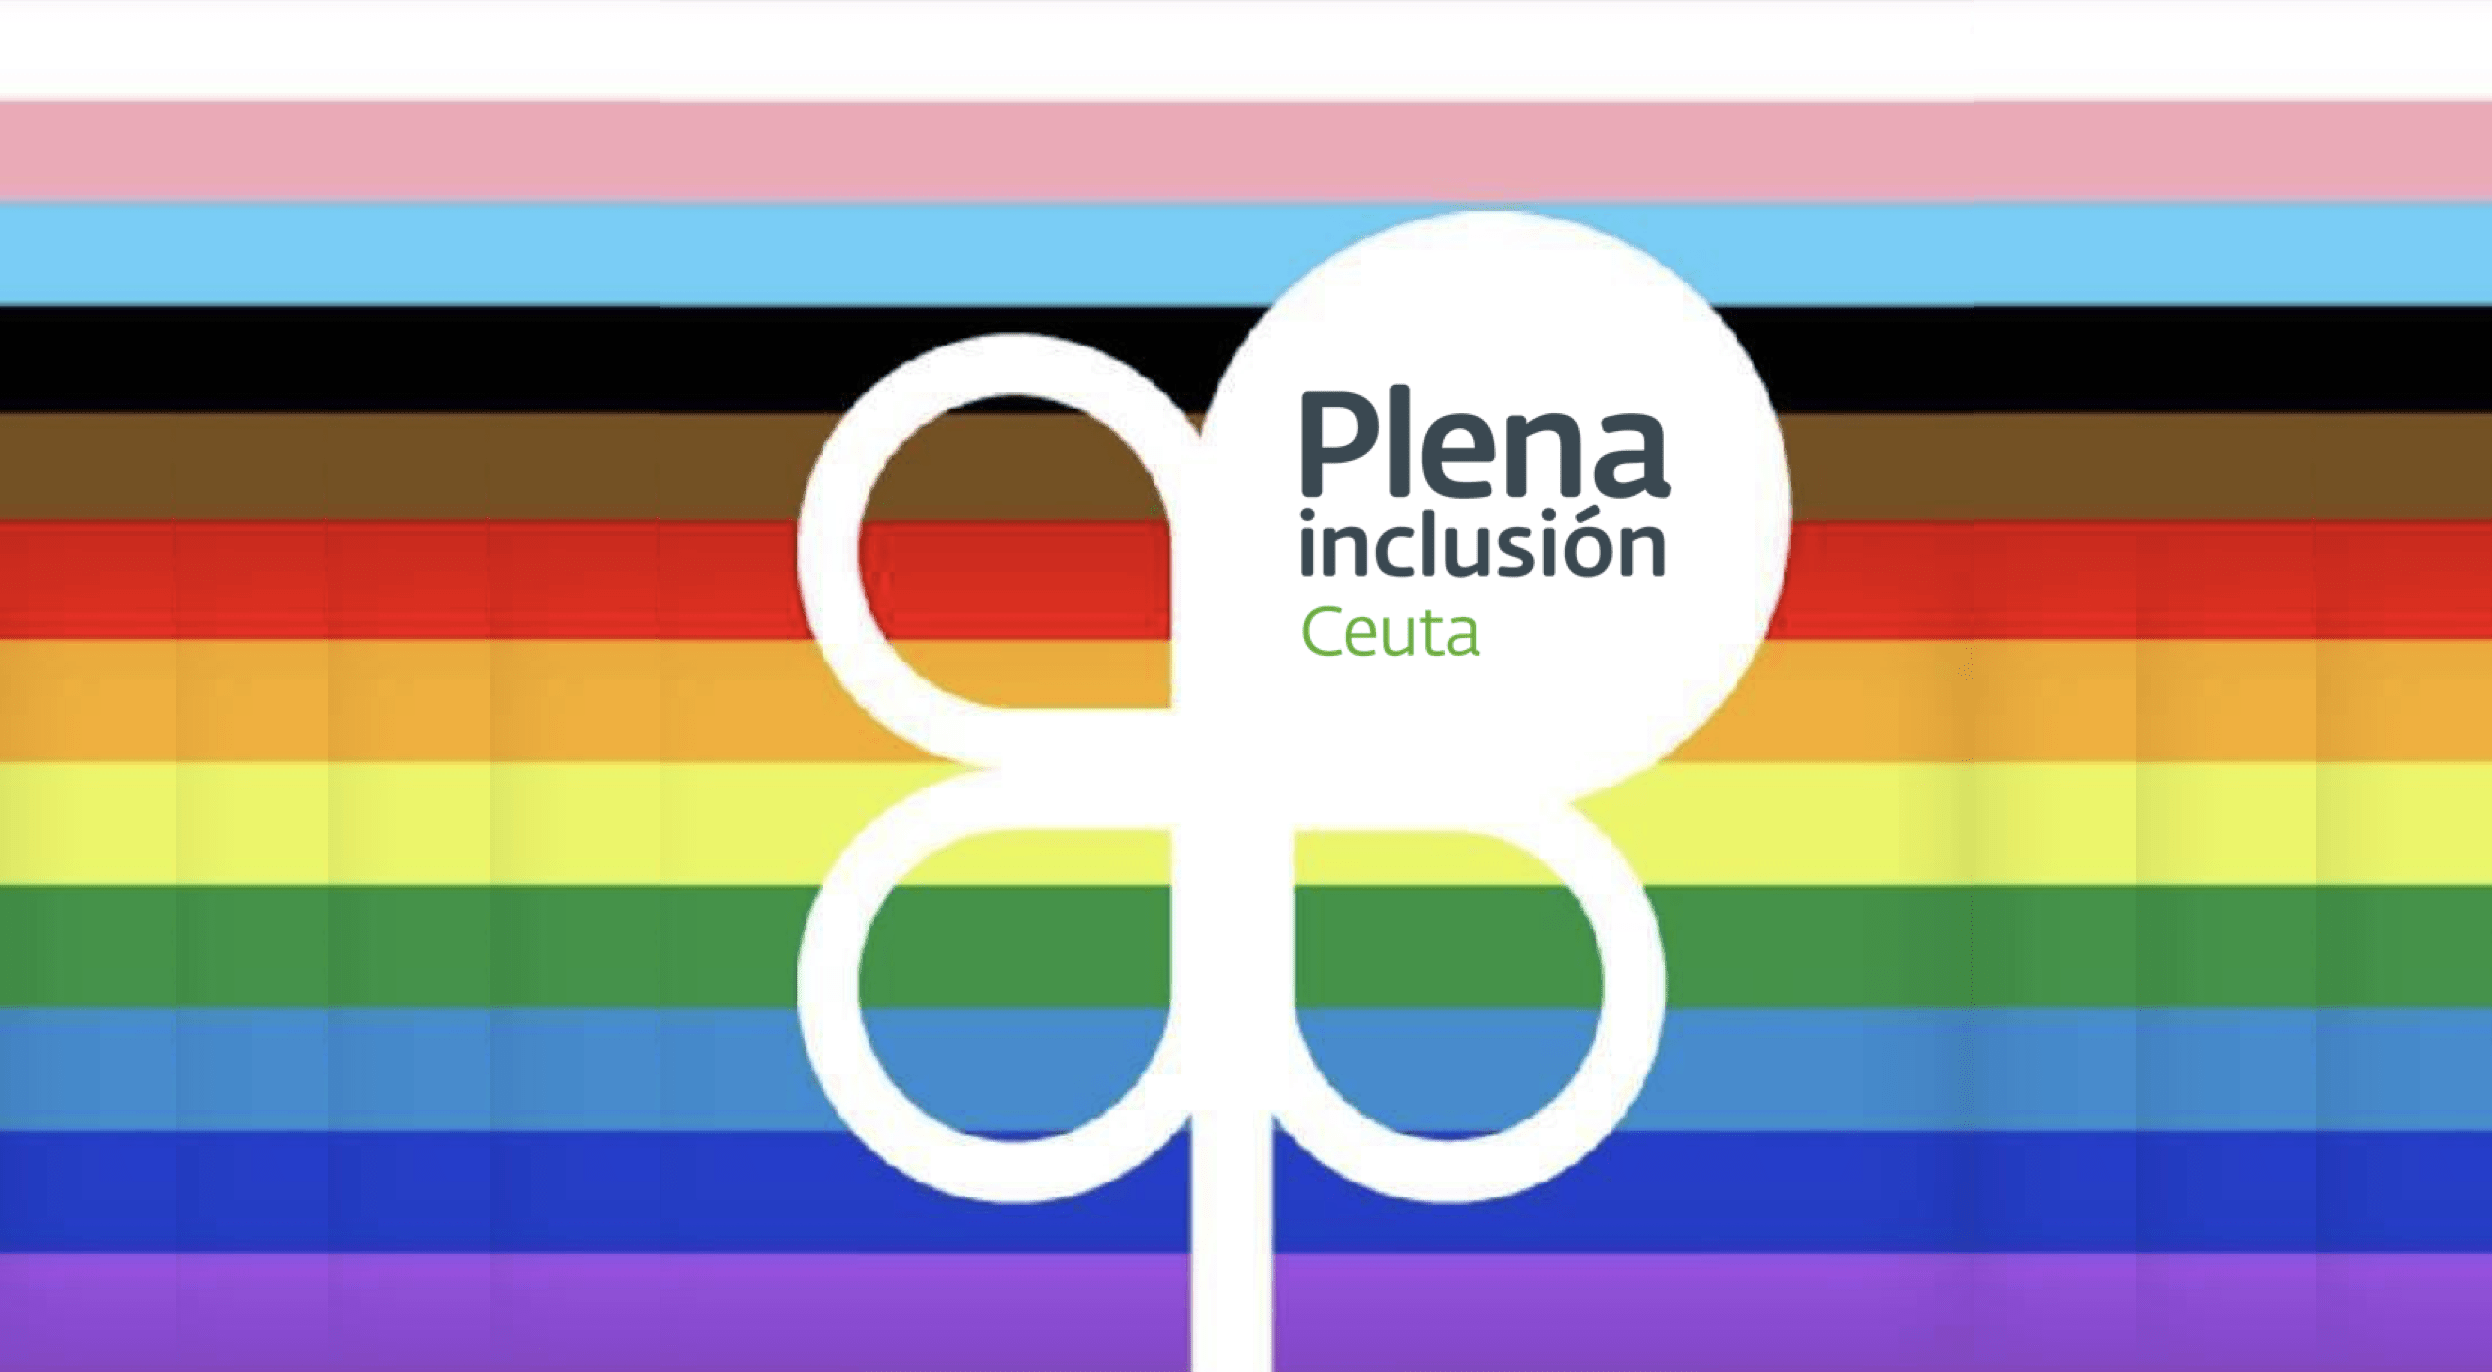 Ir a Plena inclusión Ceuta participa en las acciones del #Orgullo2020